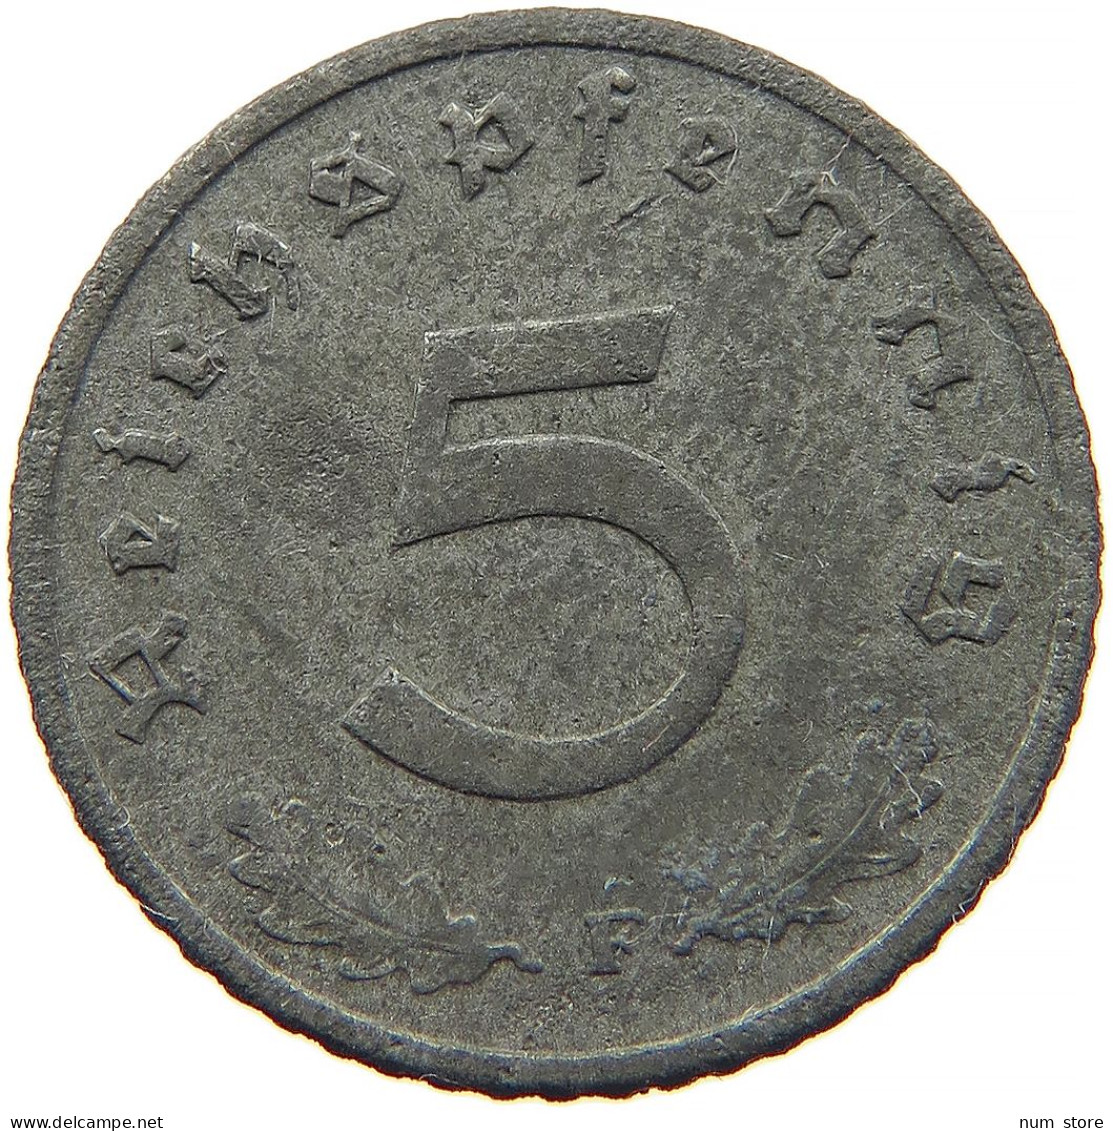 GERMANY 5 REICHSPFENNIG 1942 F #s091 0911 - 5 Reichspfennig